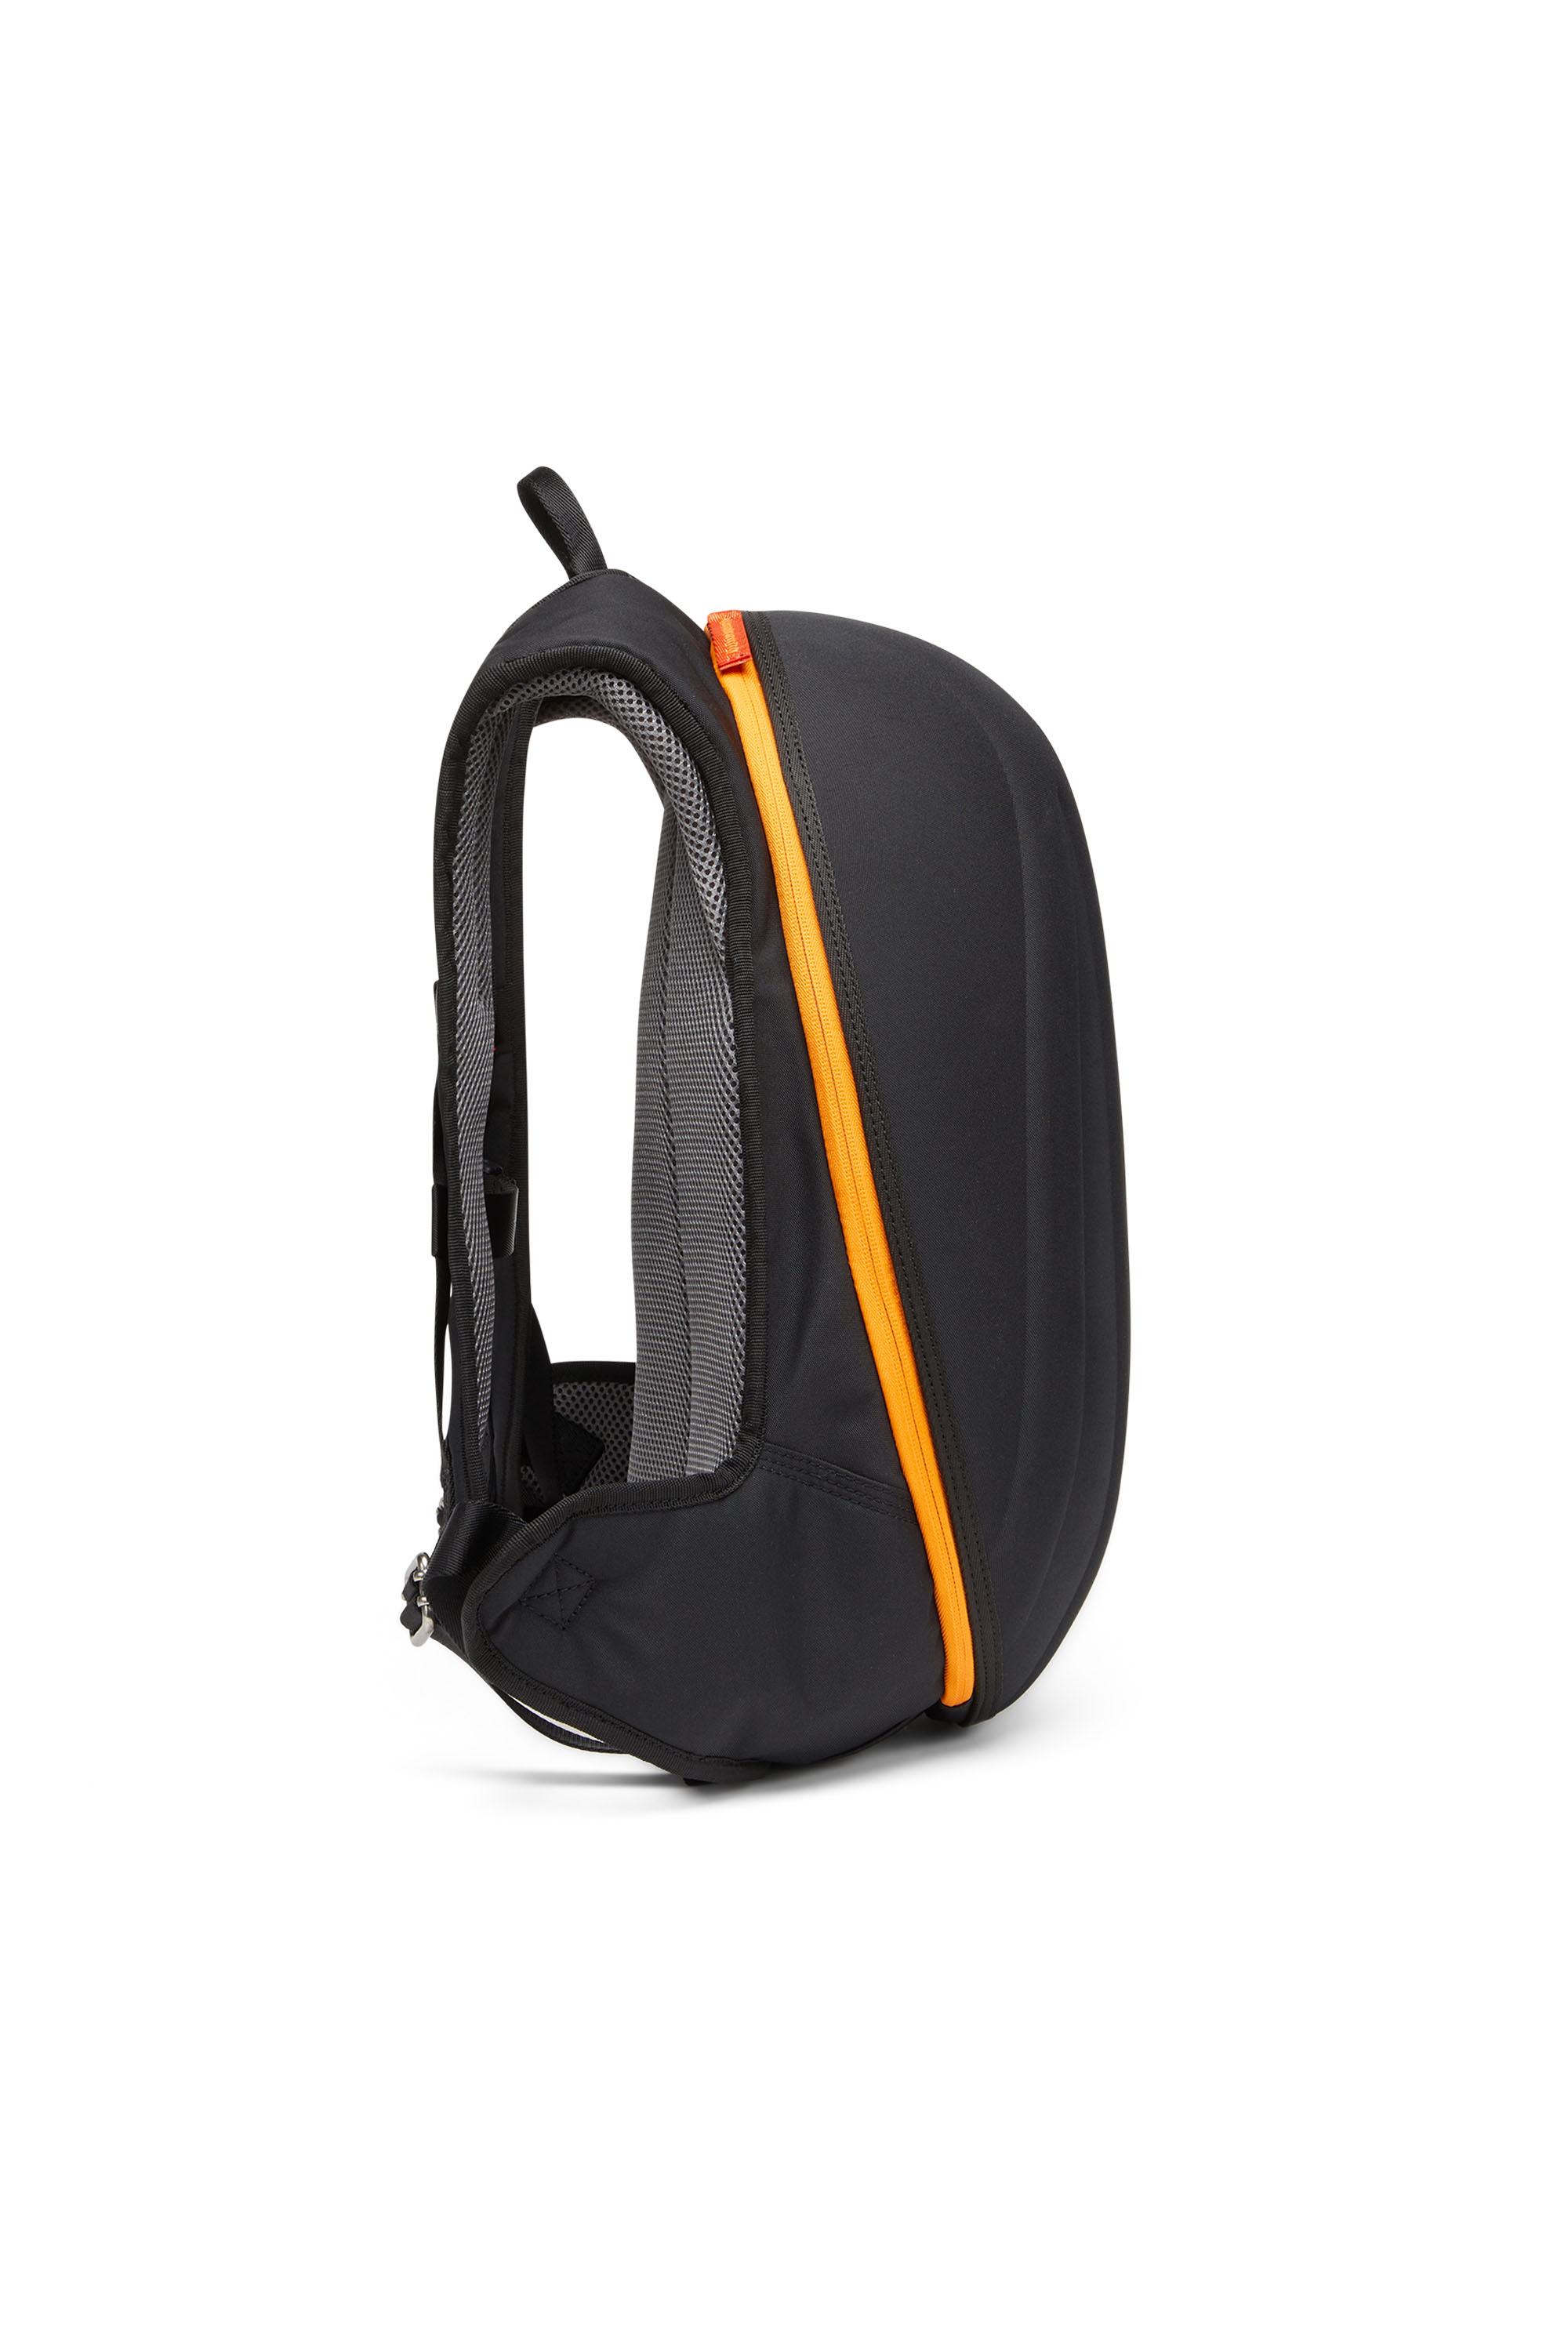 tegel onregelmatig Chemicus Men's Bags and Accessories: Backpacks, Travel, Crossbody | Diesel®